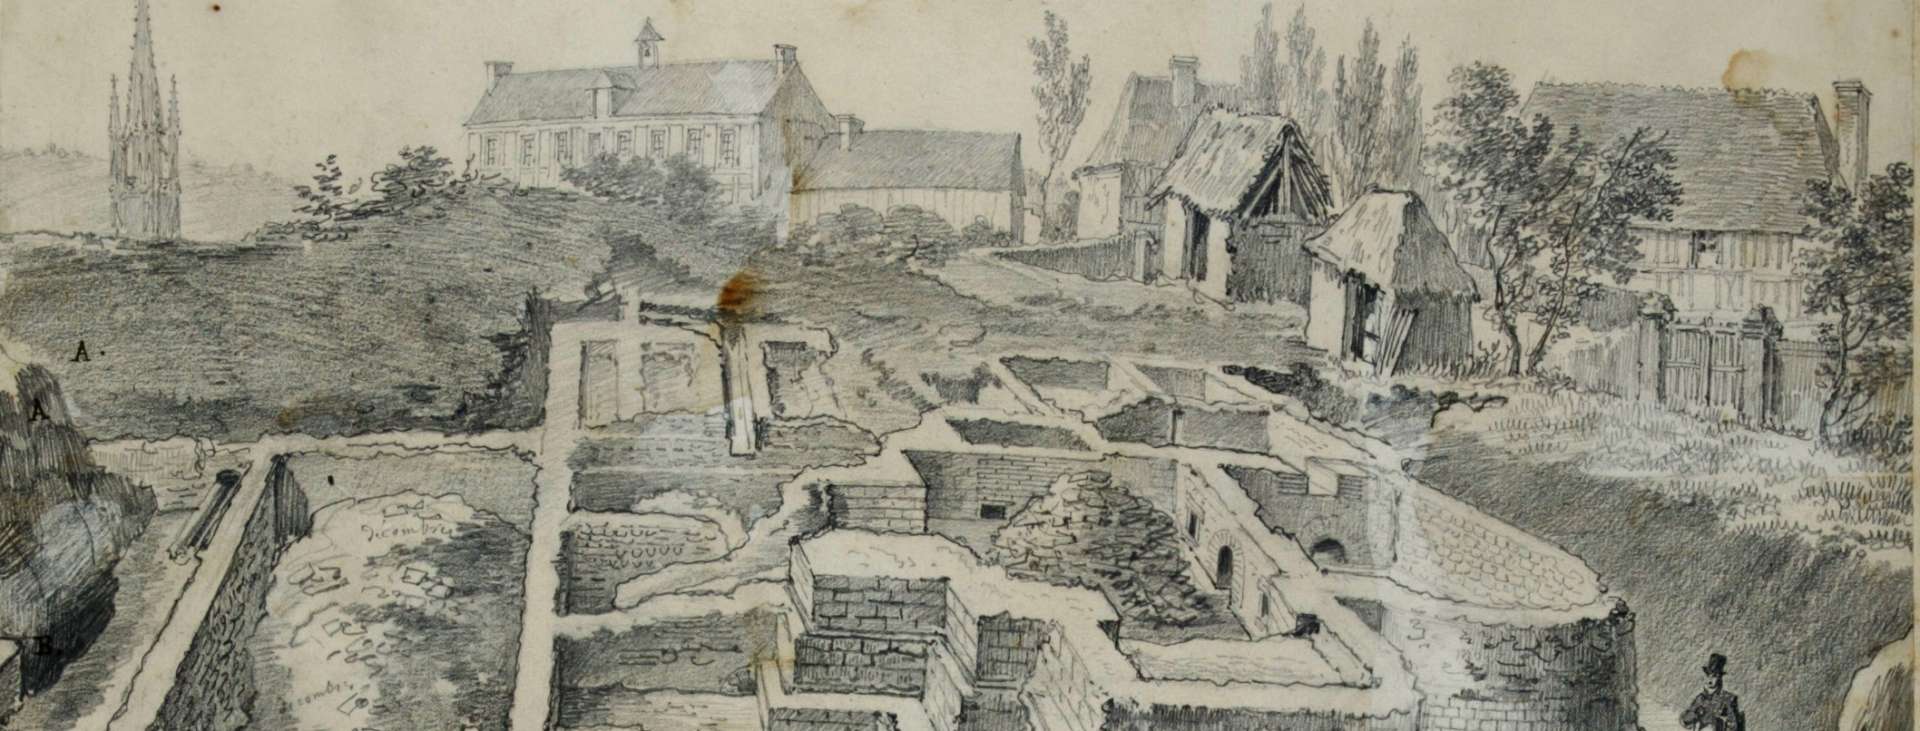 Dessin des vestiges de la rue des Bains, réalisé en 1828 par Eustache-Hyacinthe Langlois